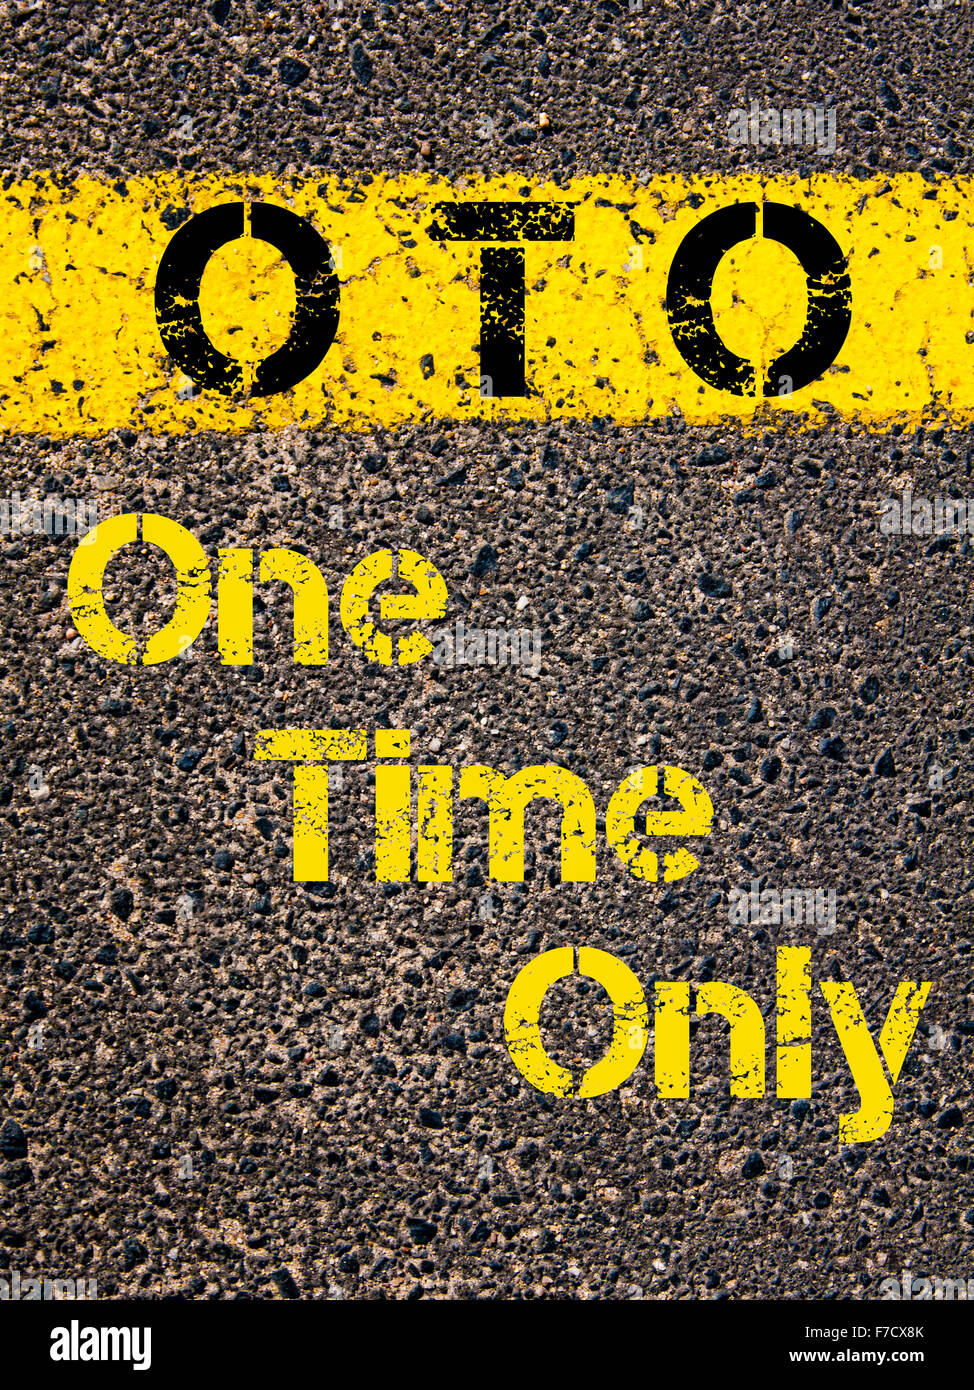 Konzept-Bild der Buchhaltung Business Abkürzung OTO eine Zeit nur über Straße Markierung gelber Farbe geschrieben. Stockfoto